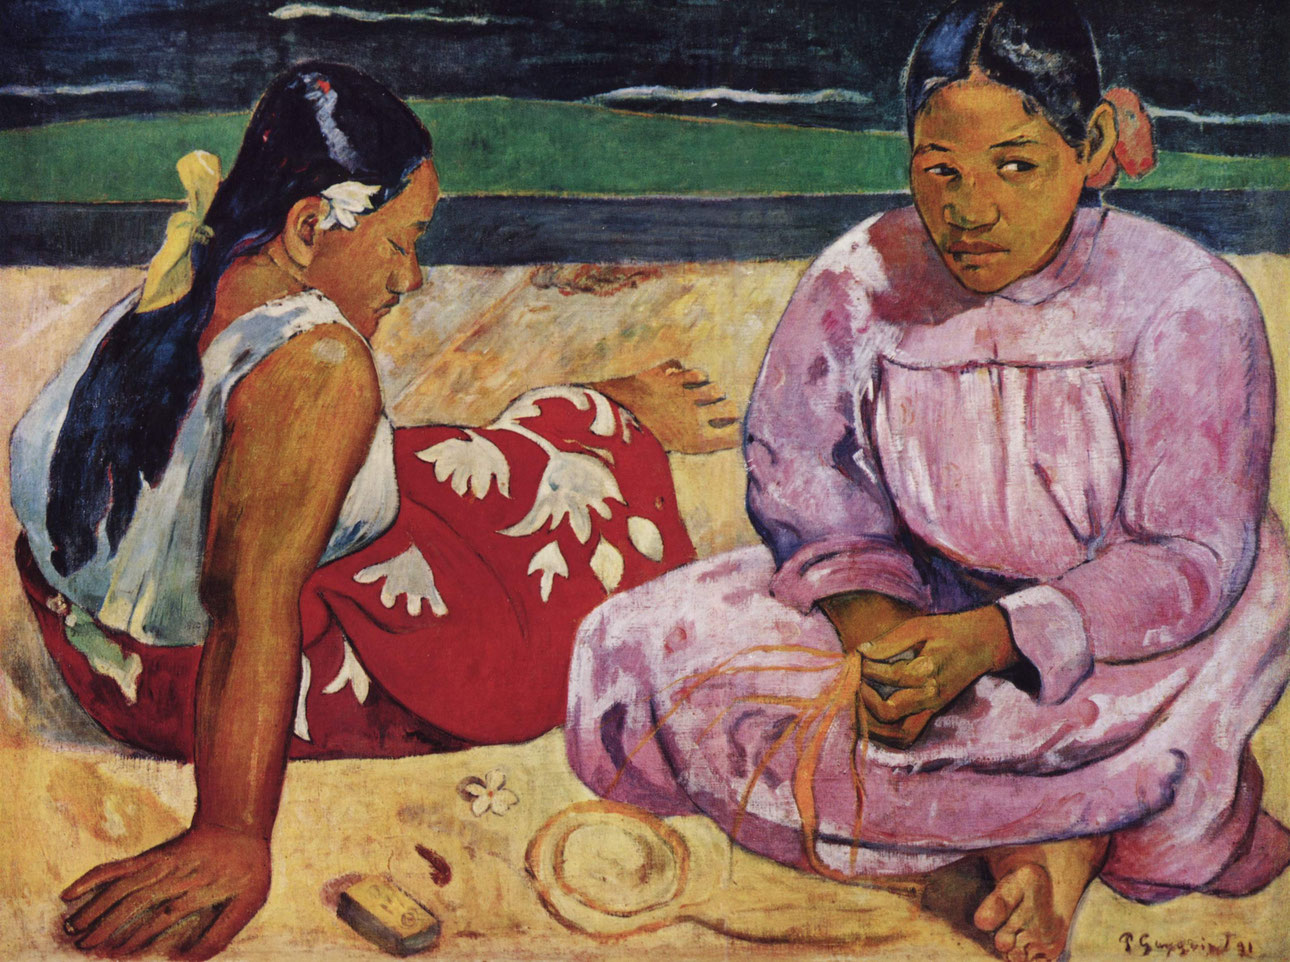 【美術解説】ポール・ゴーギャン「プリミティヴィズムに影響を受けた後期印象派の画家」